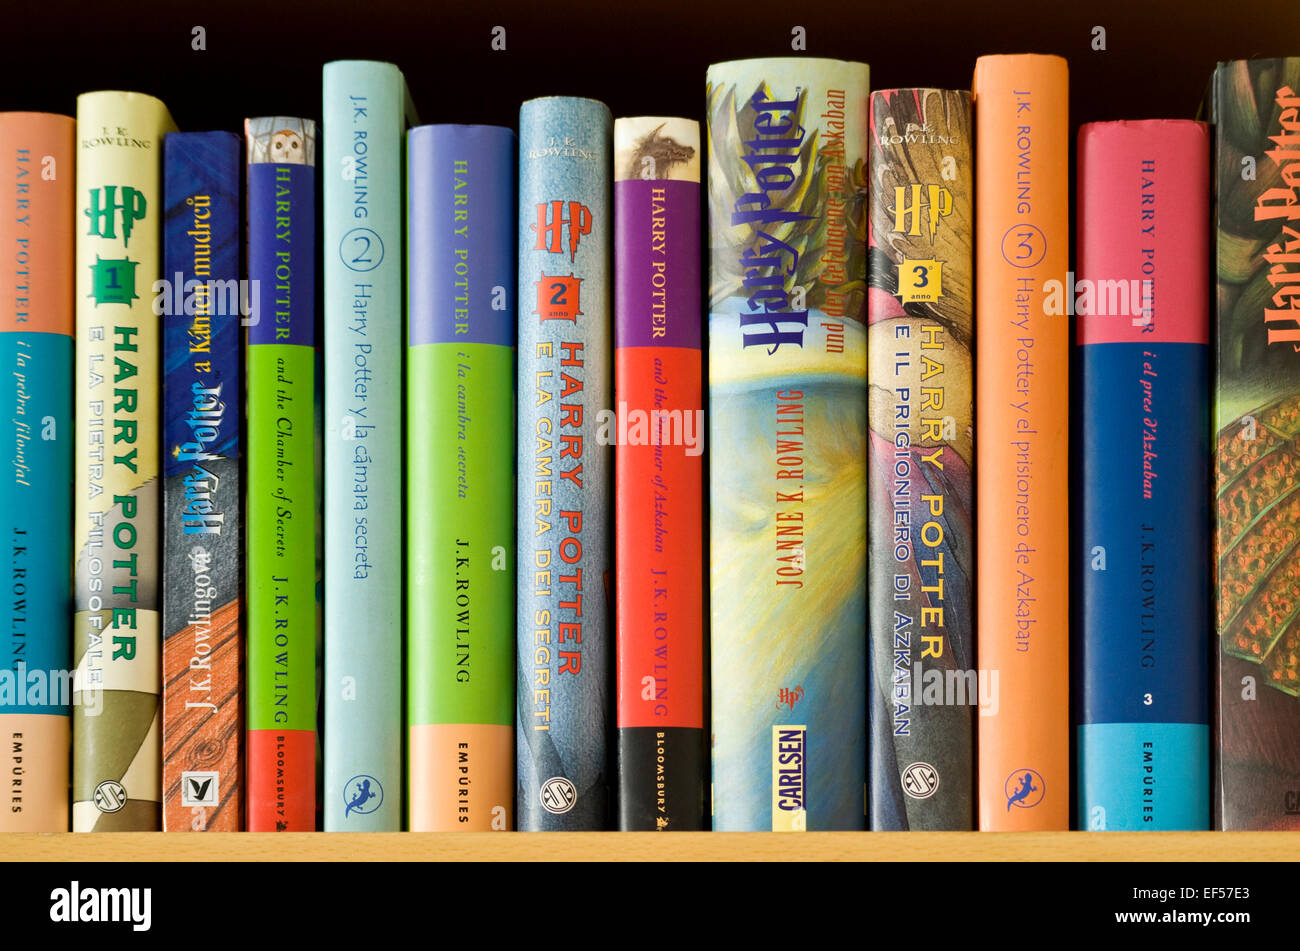 J.K. Rowling los libros de Harry Potter en la traducción. Italiano, Alemán,  Español, catalán y checo Fotografía de stock - Alamy